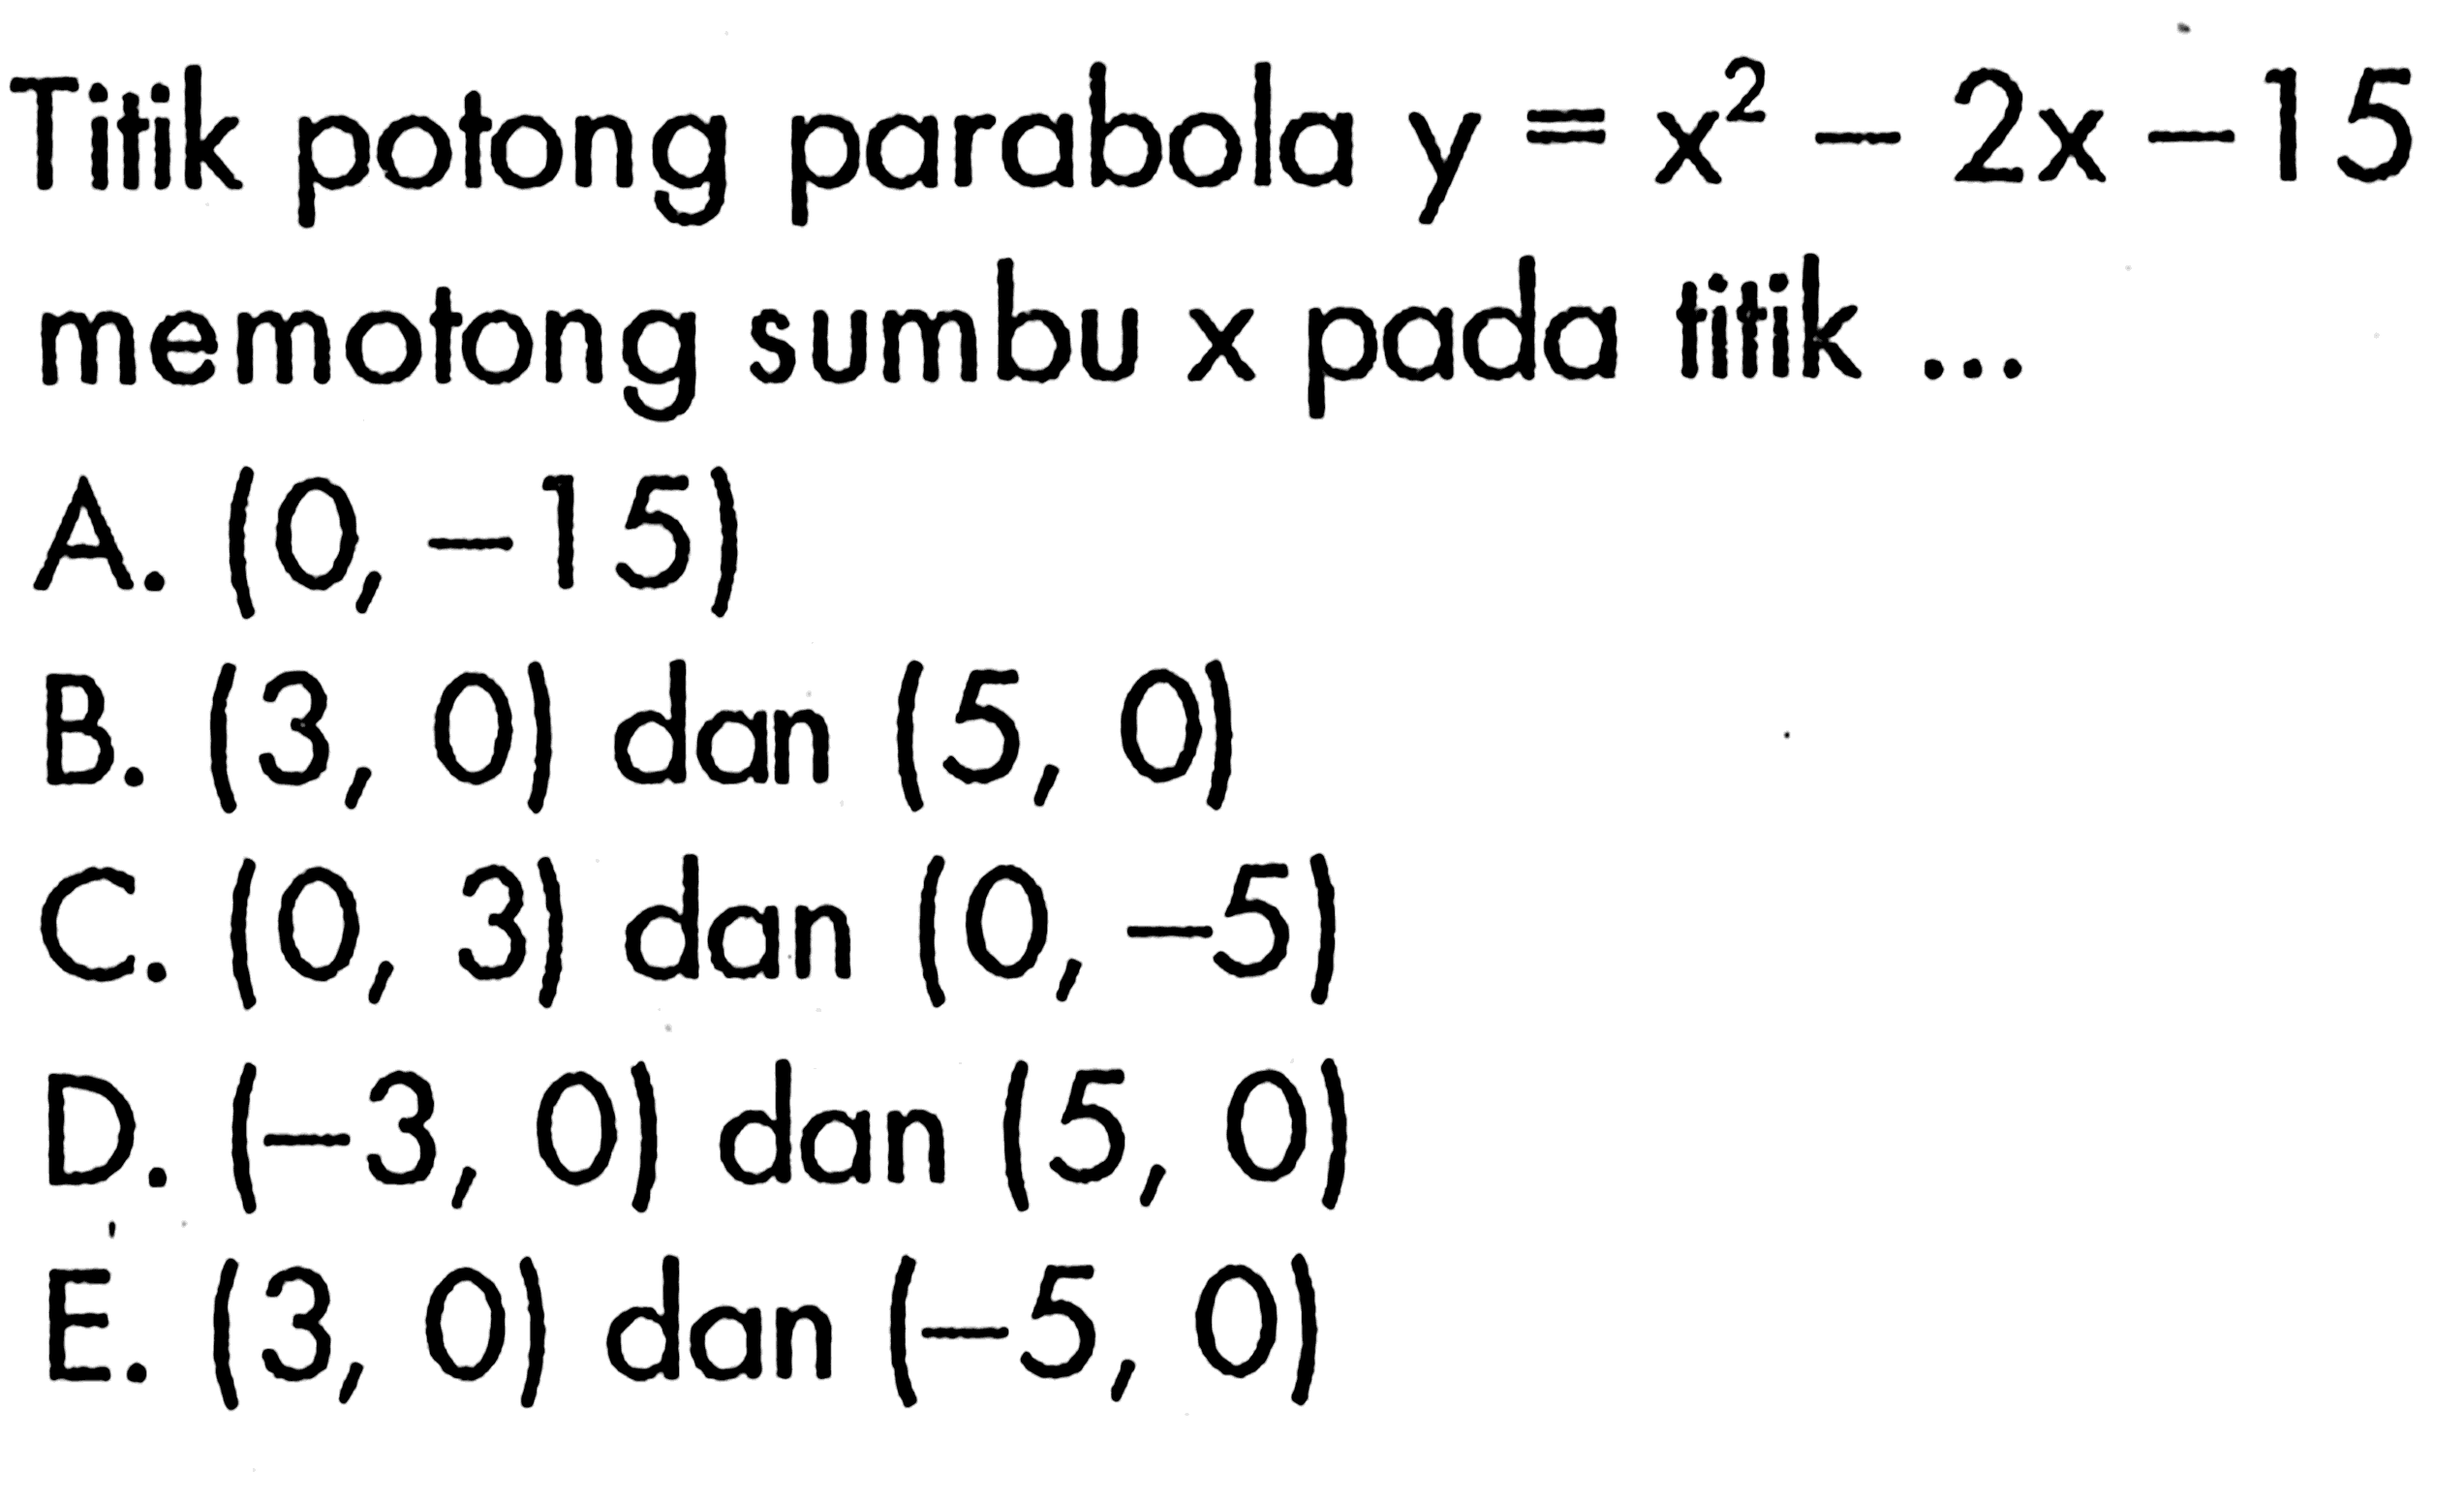 Titik potong parabola y=x^2-2x-15 memotong sumbu x pada titik ...